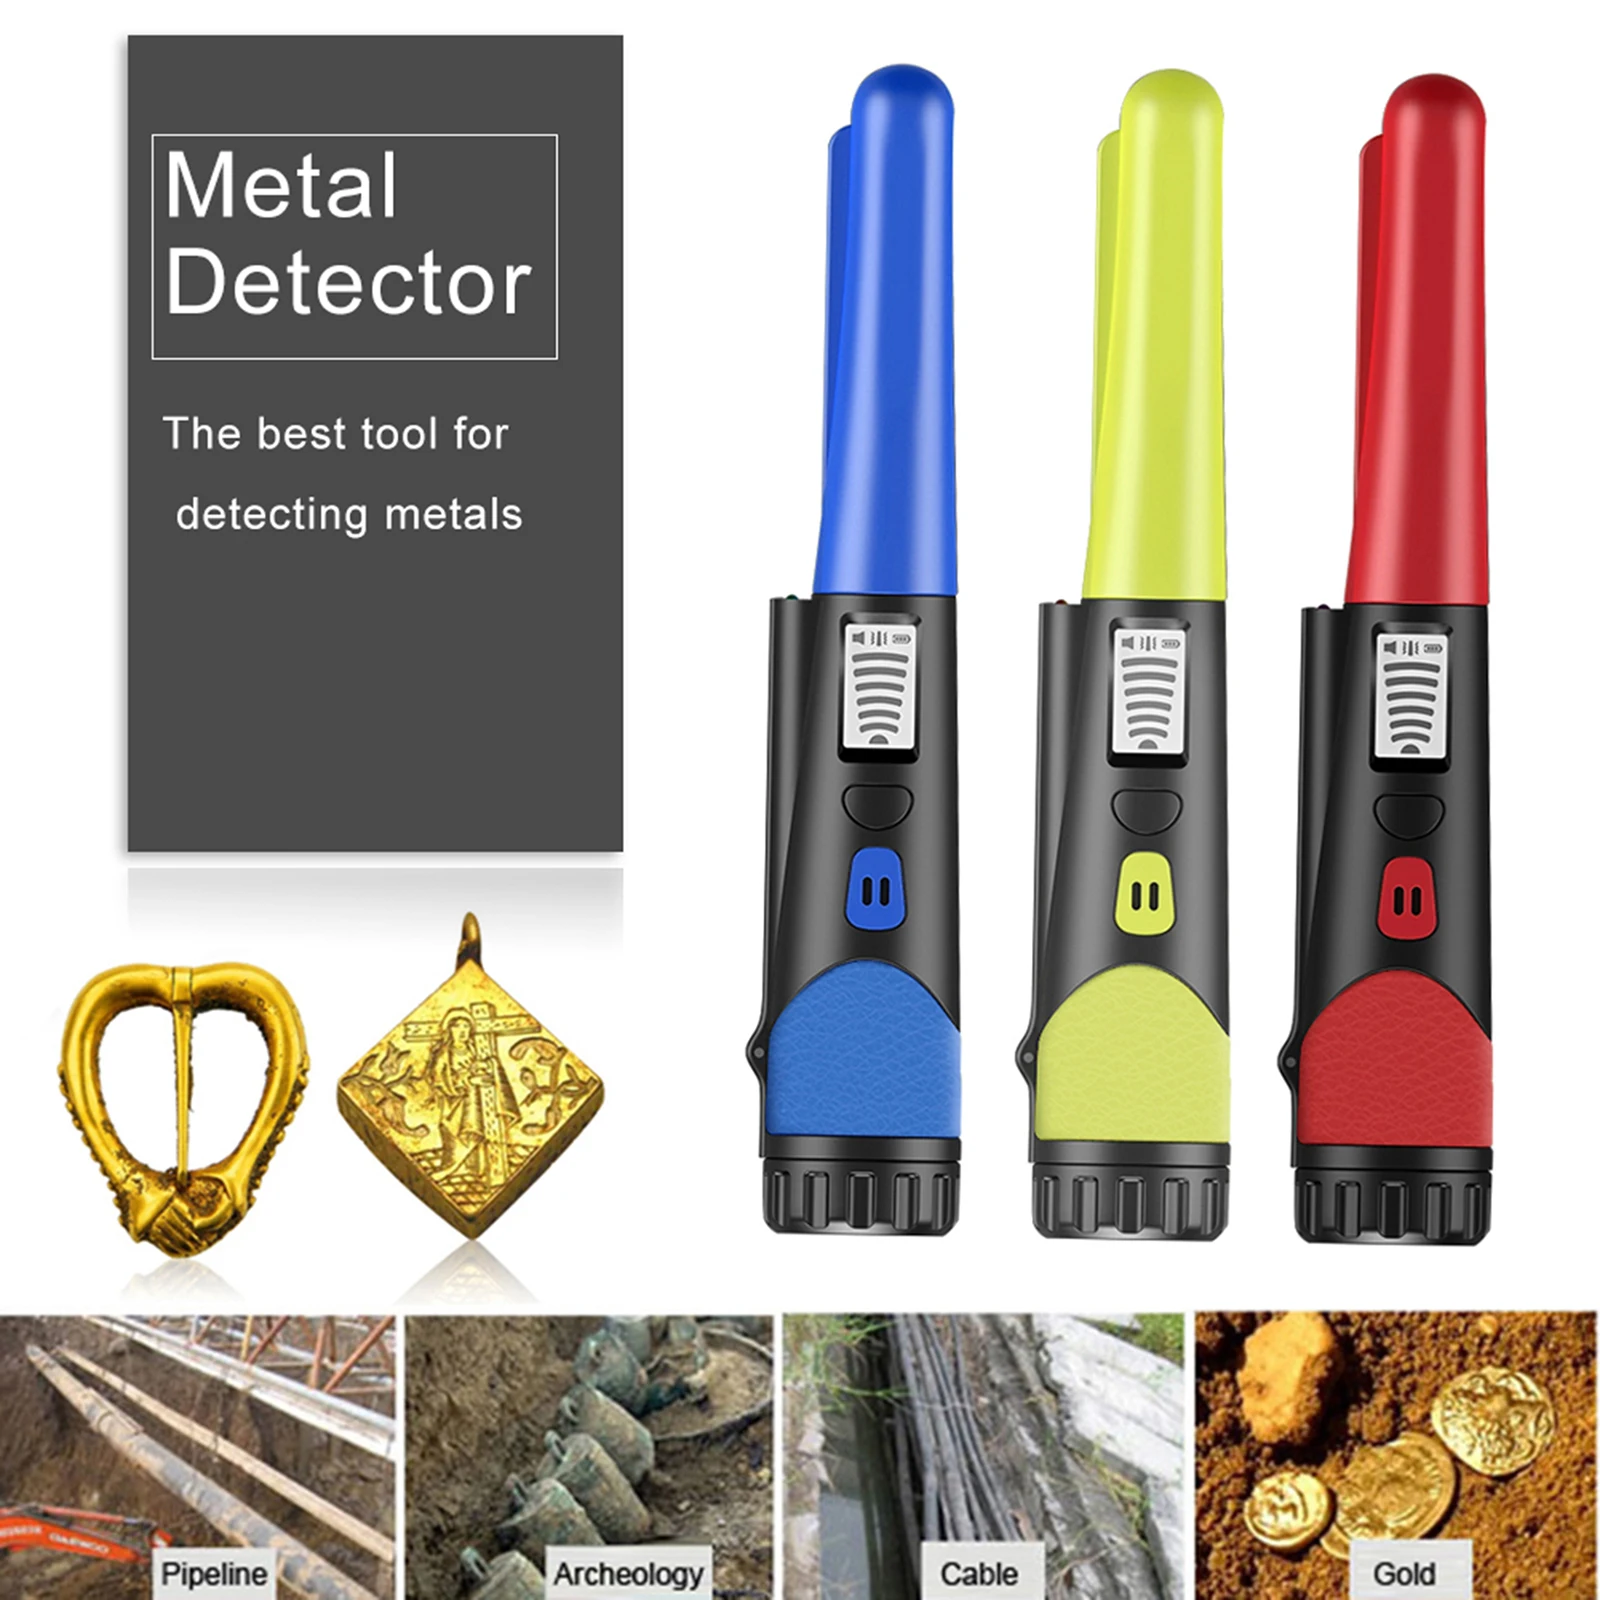 2020 Actualización Sensible Detector De Metales Puntero De Indicación Exacta Gp-Pointerii Impermeable Detector De Metales De Mano Con La Pulsera 3